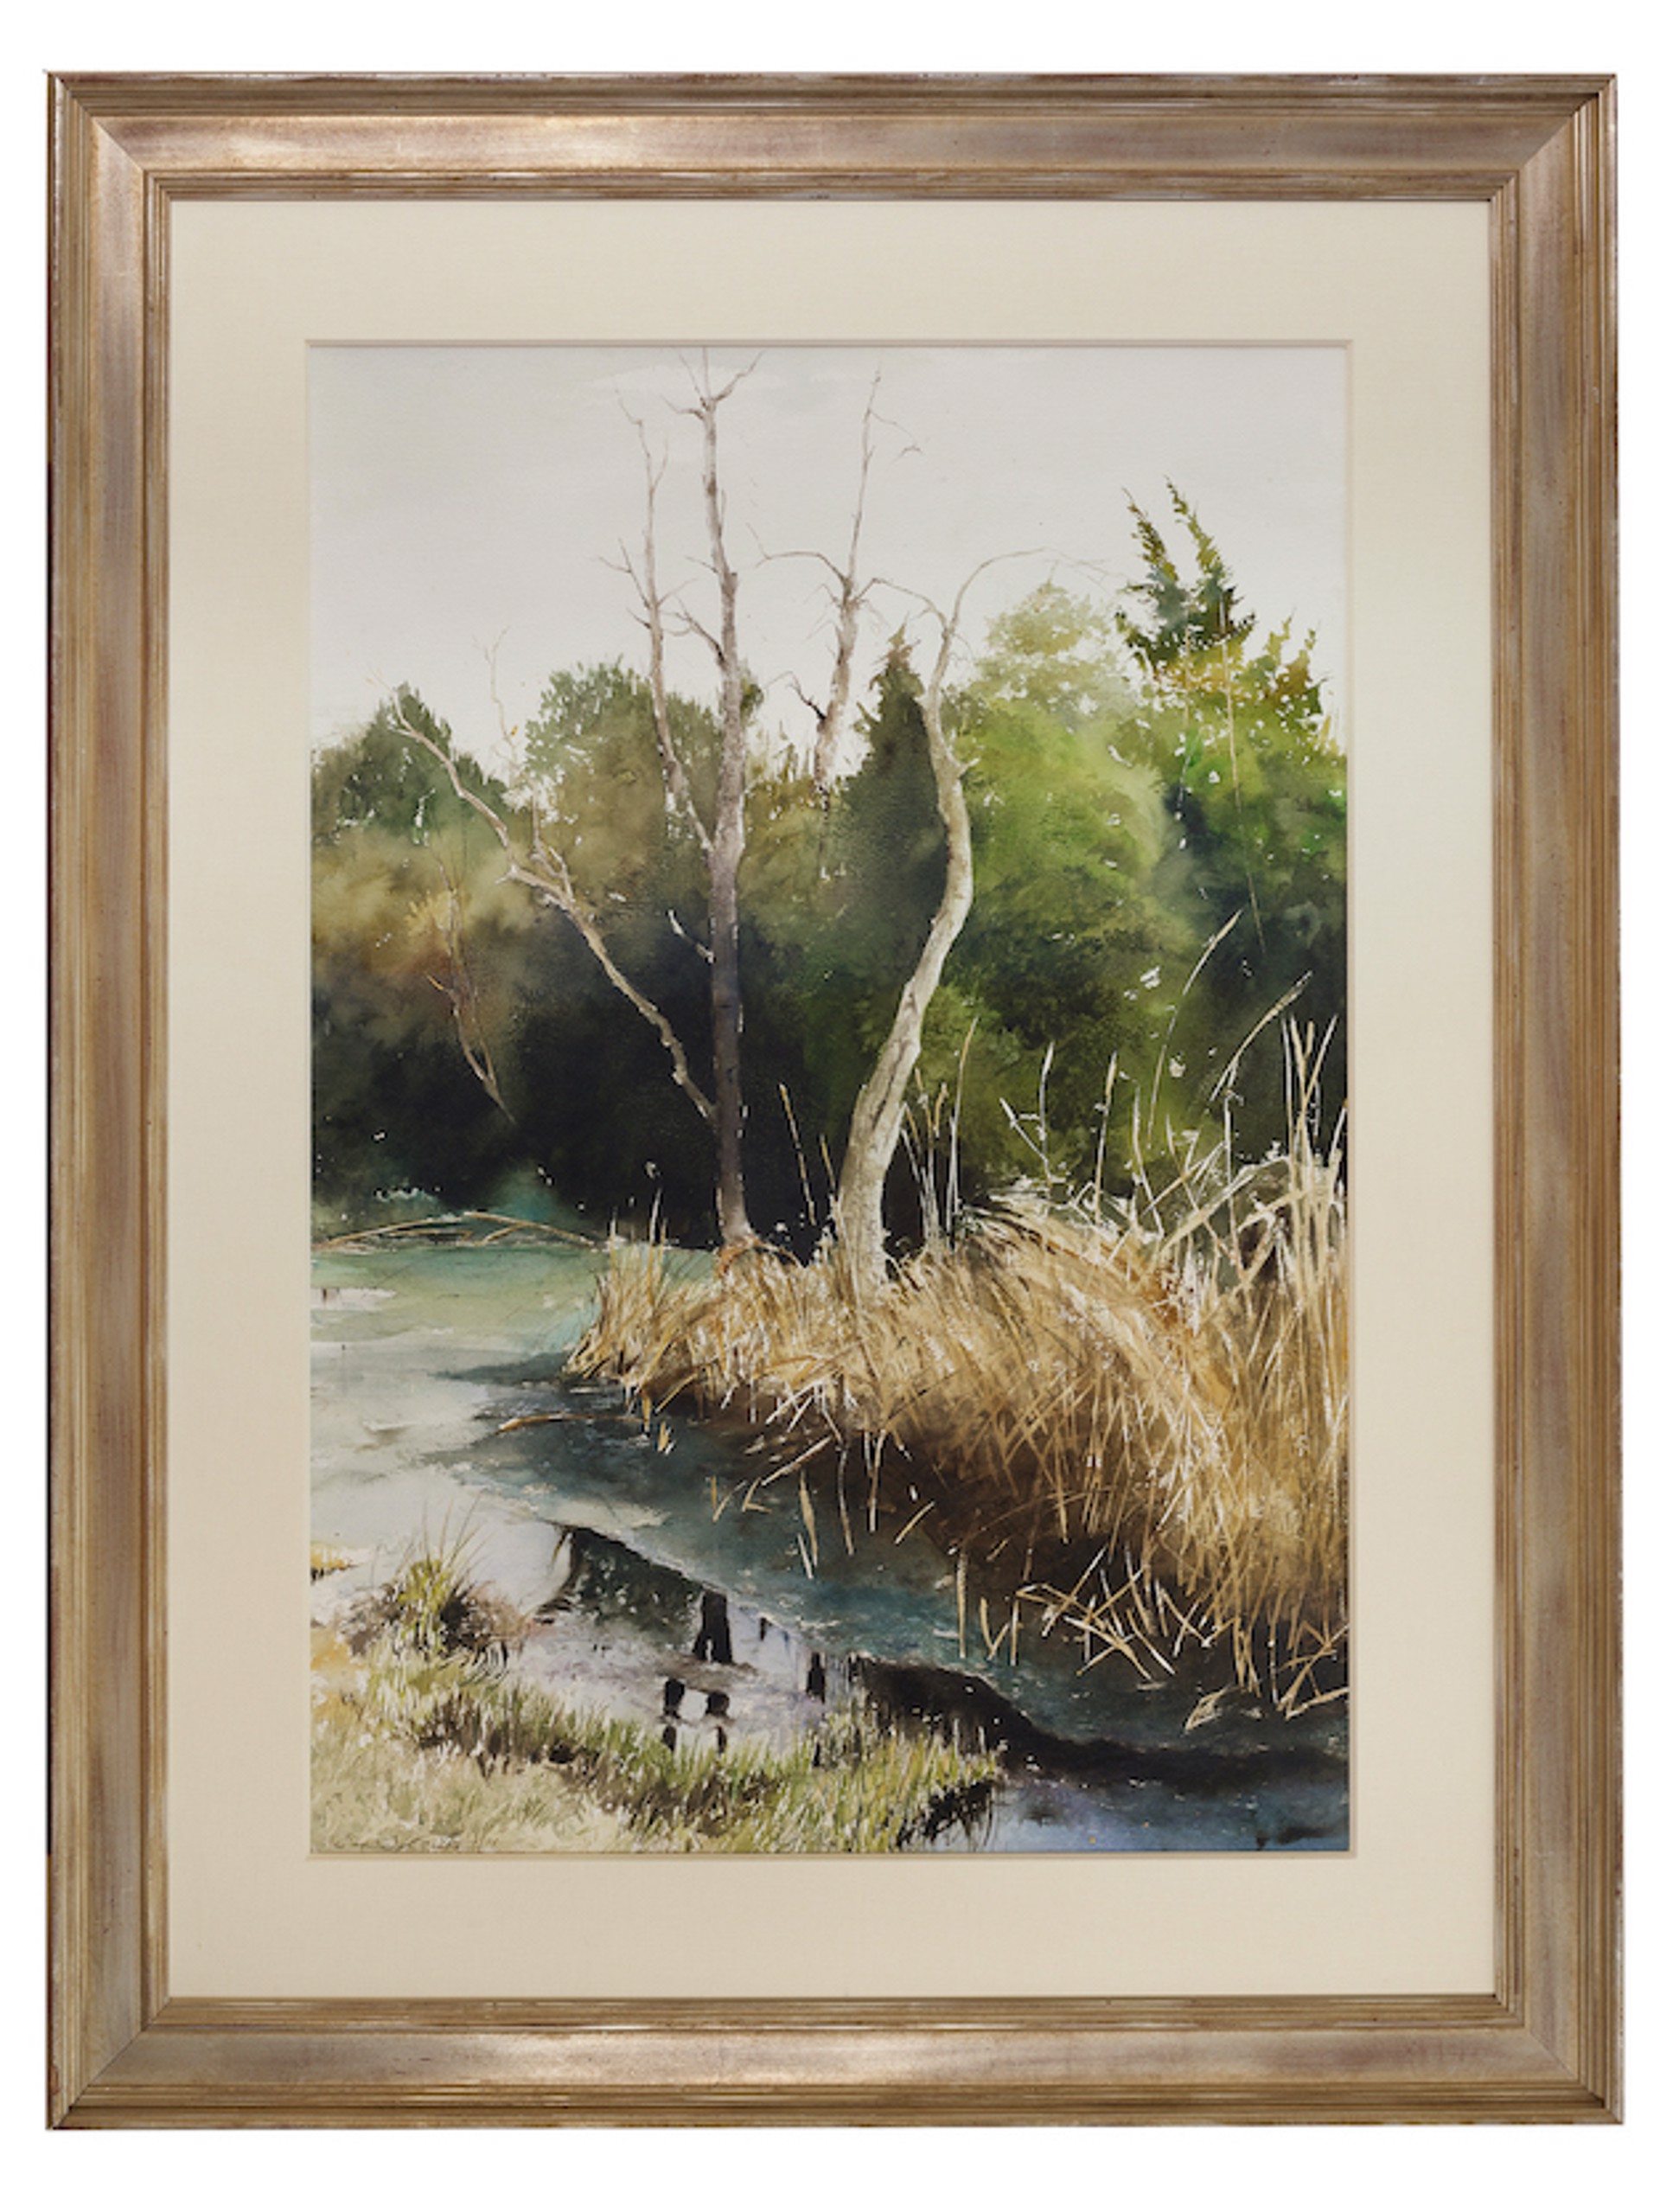 Marsh View by Earl B. Lewis